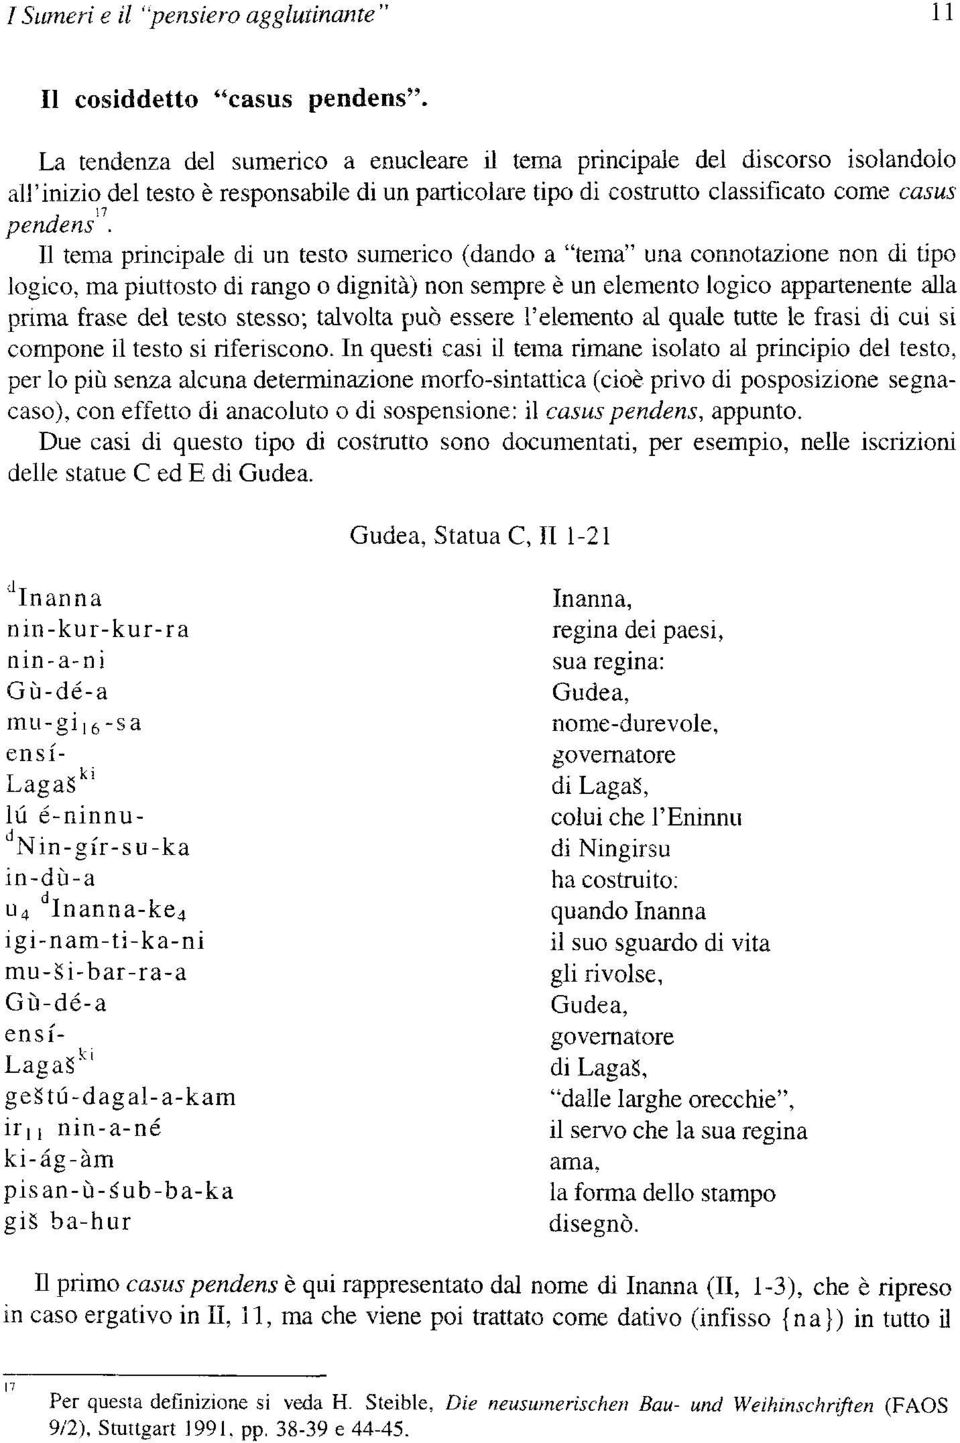 Il tema principale di un testo sumerico (dando a "tema" una connotazione non di tipo logico, ma piuttosto di rango o dignità) non sempre è un elemento logico appartenente alla prima frase del testo